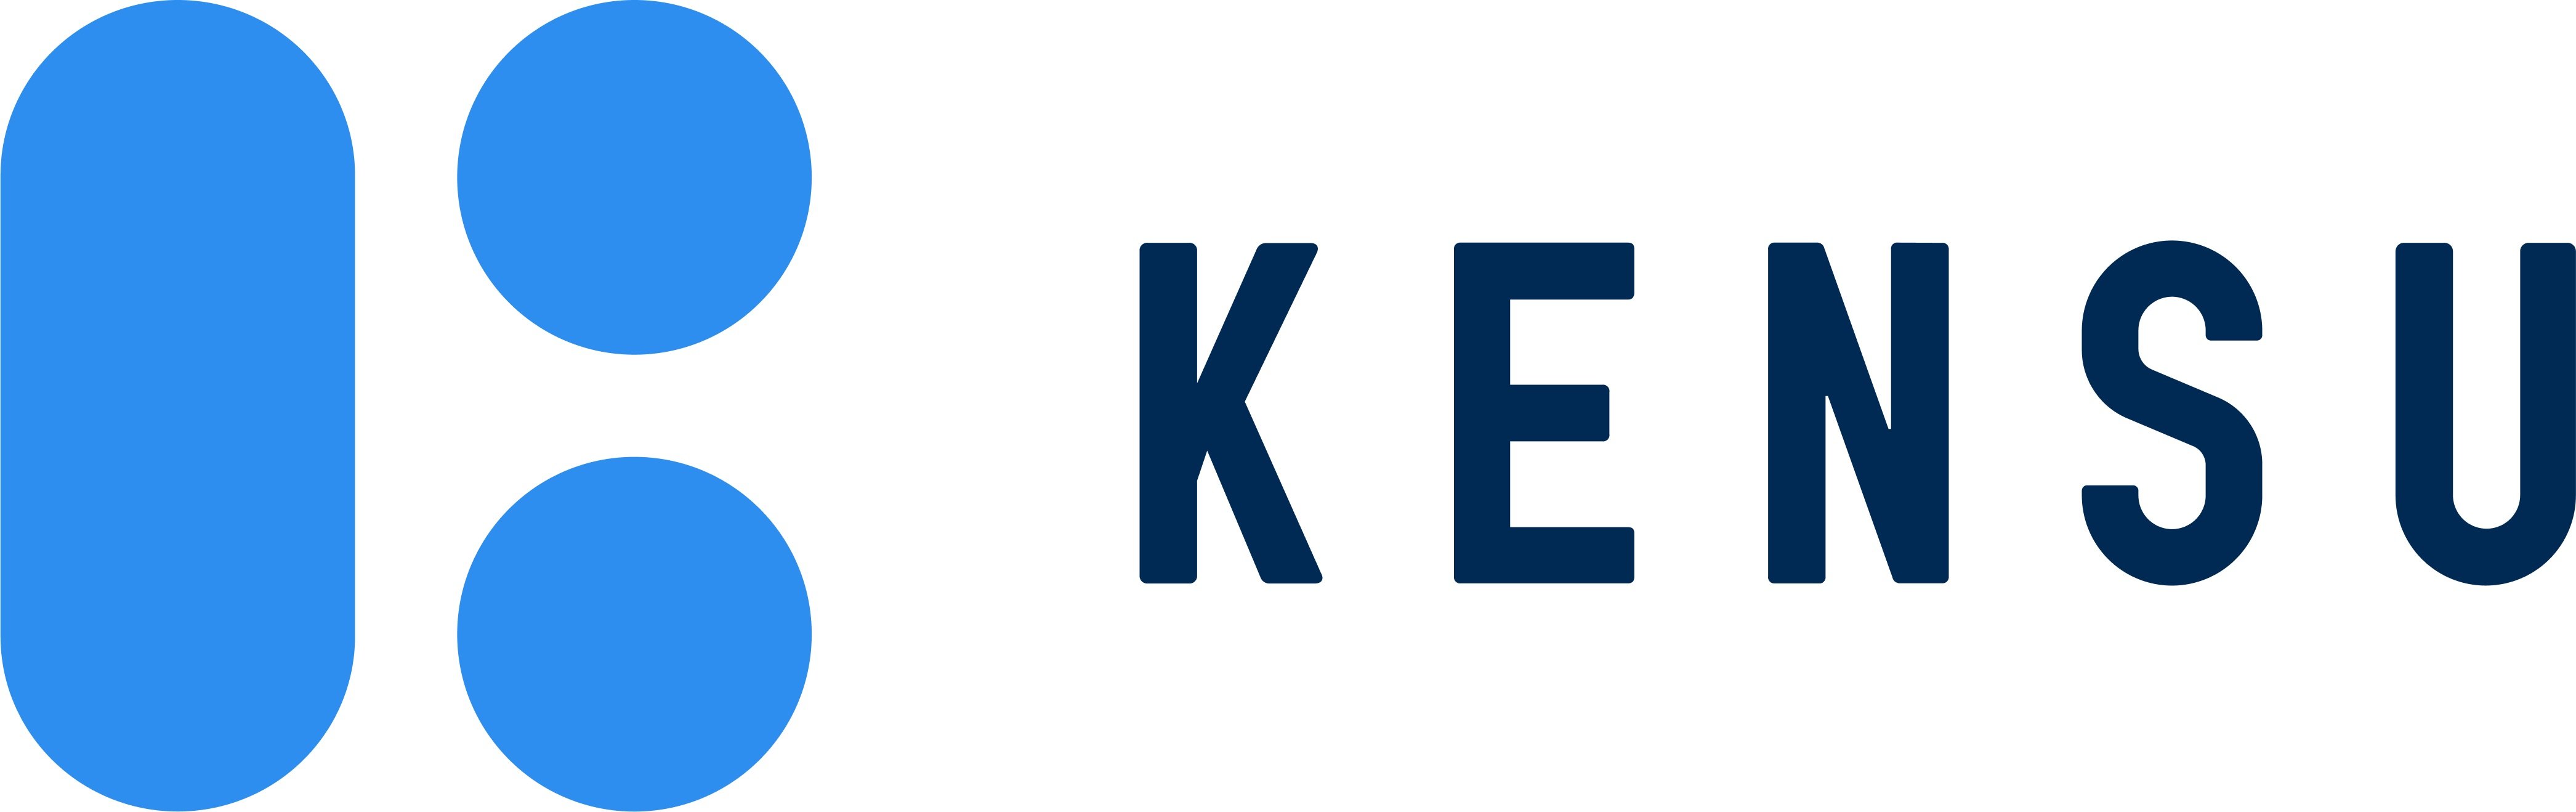 Kensu_logo